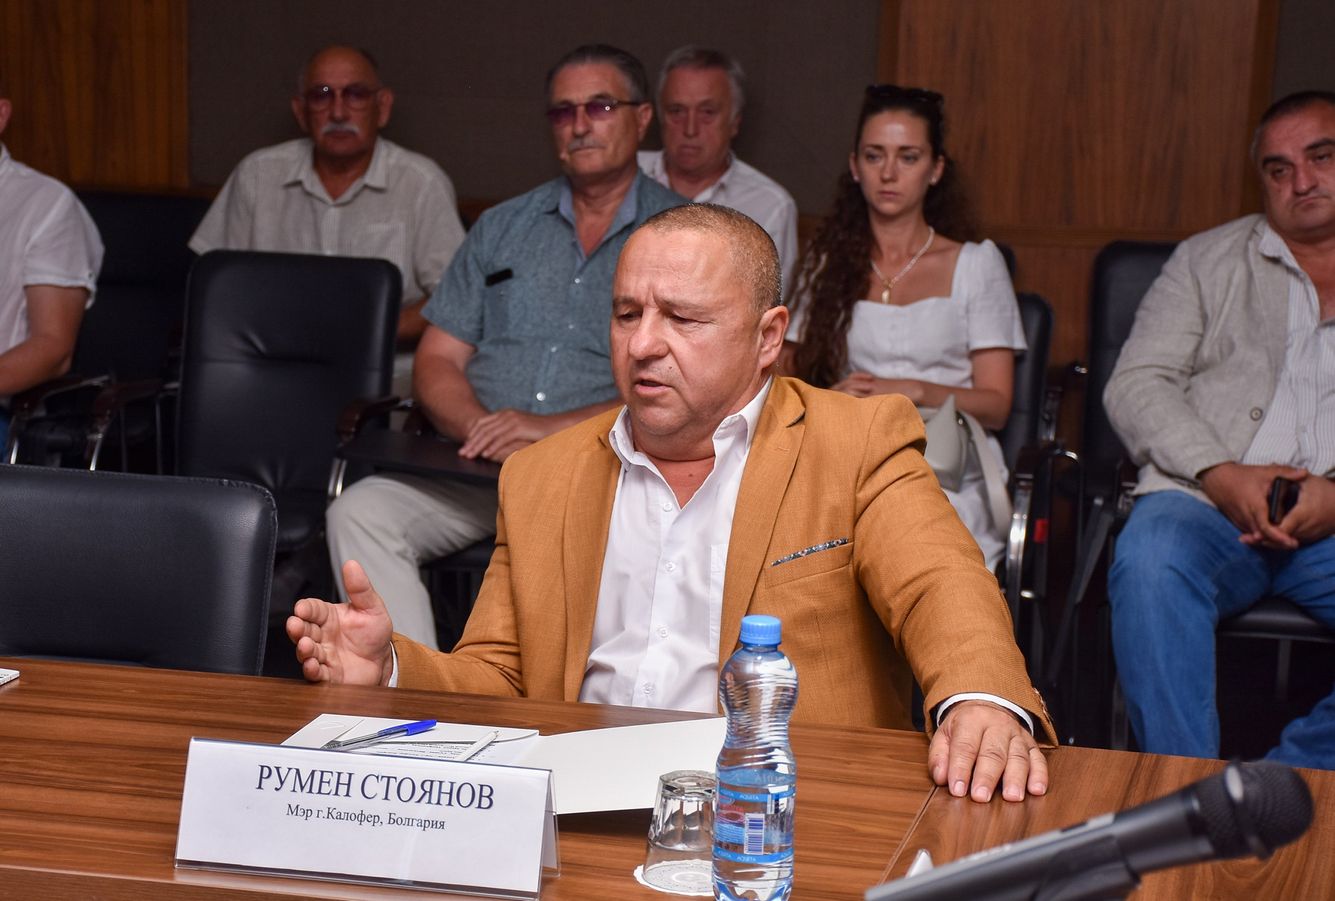 Евпатория подписала соглашение о сотрудничестве с муниципалитетом Болгарии